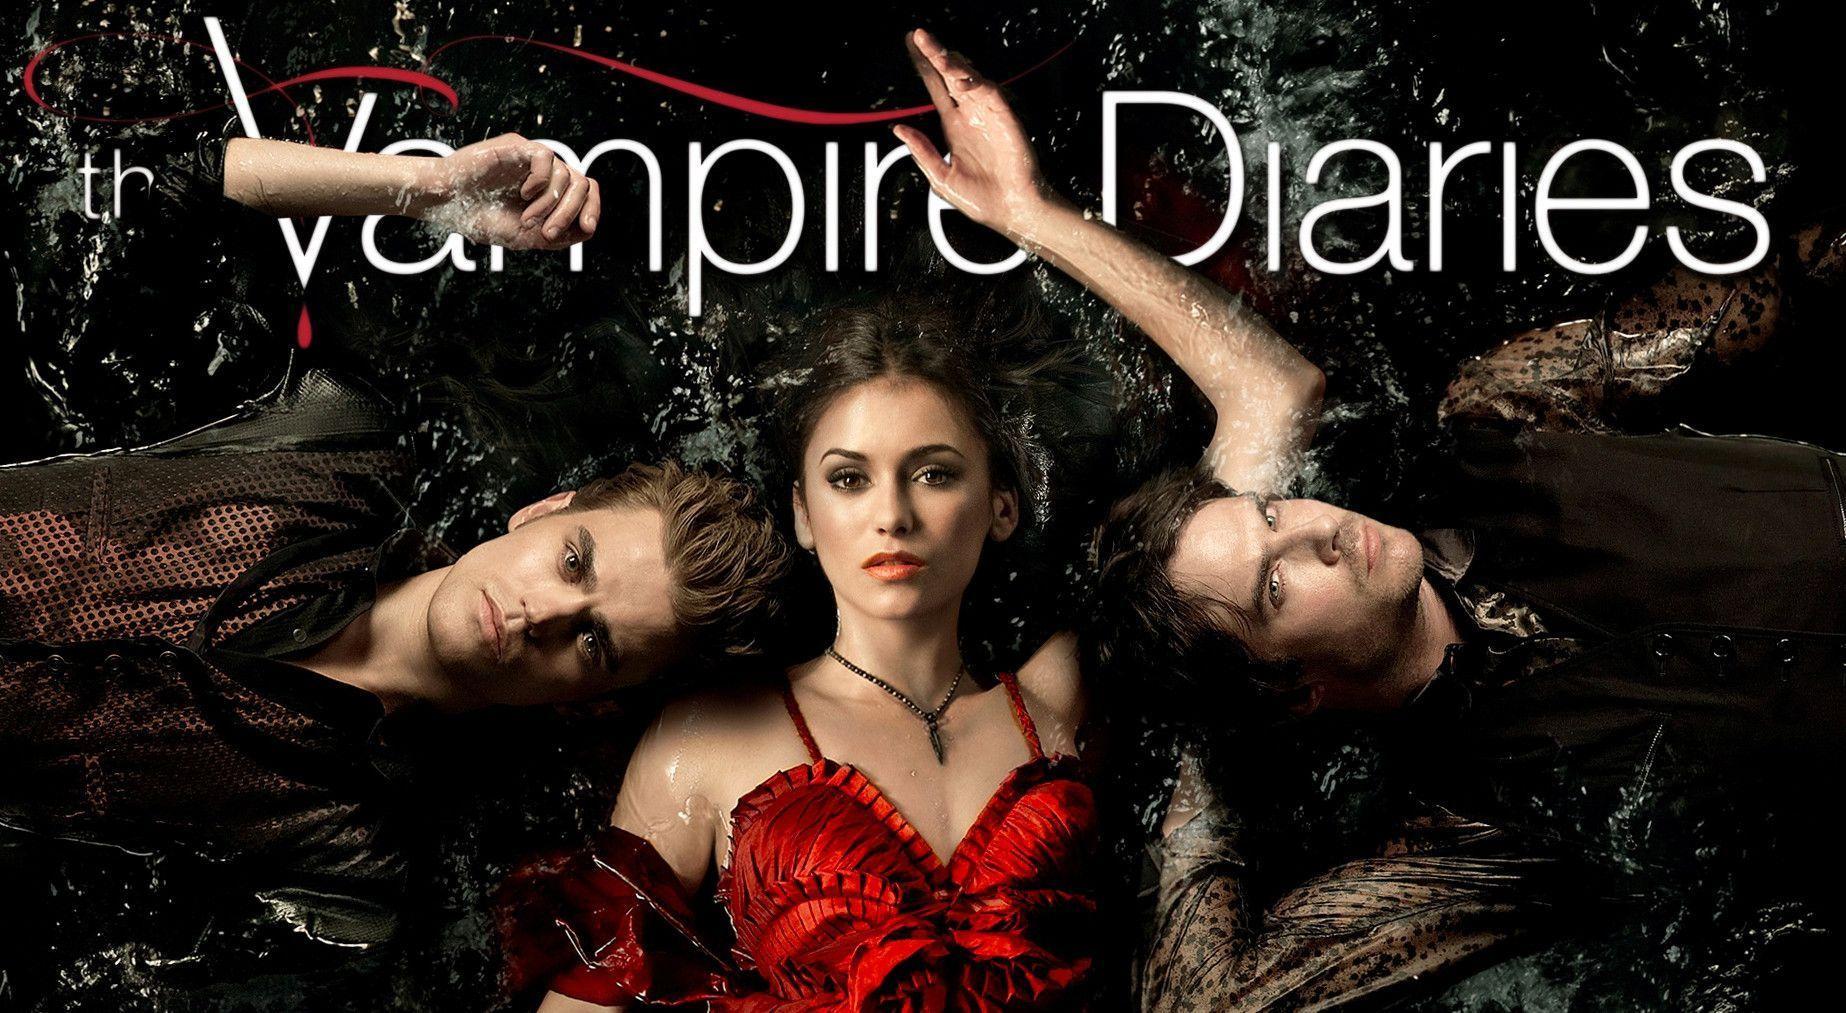 Vampire Diaries Wallpaper. Free Download Wallpaper